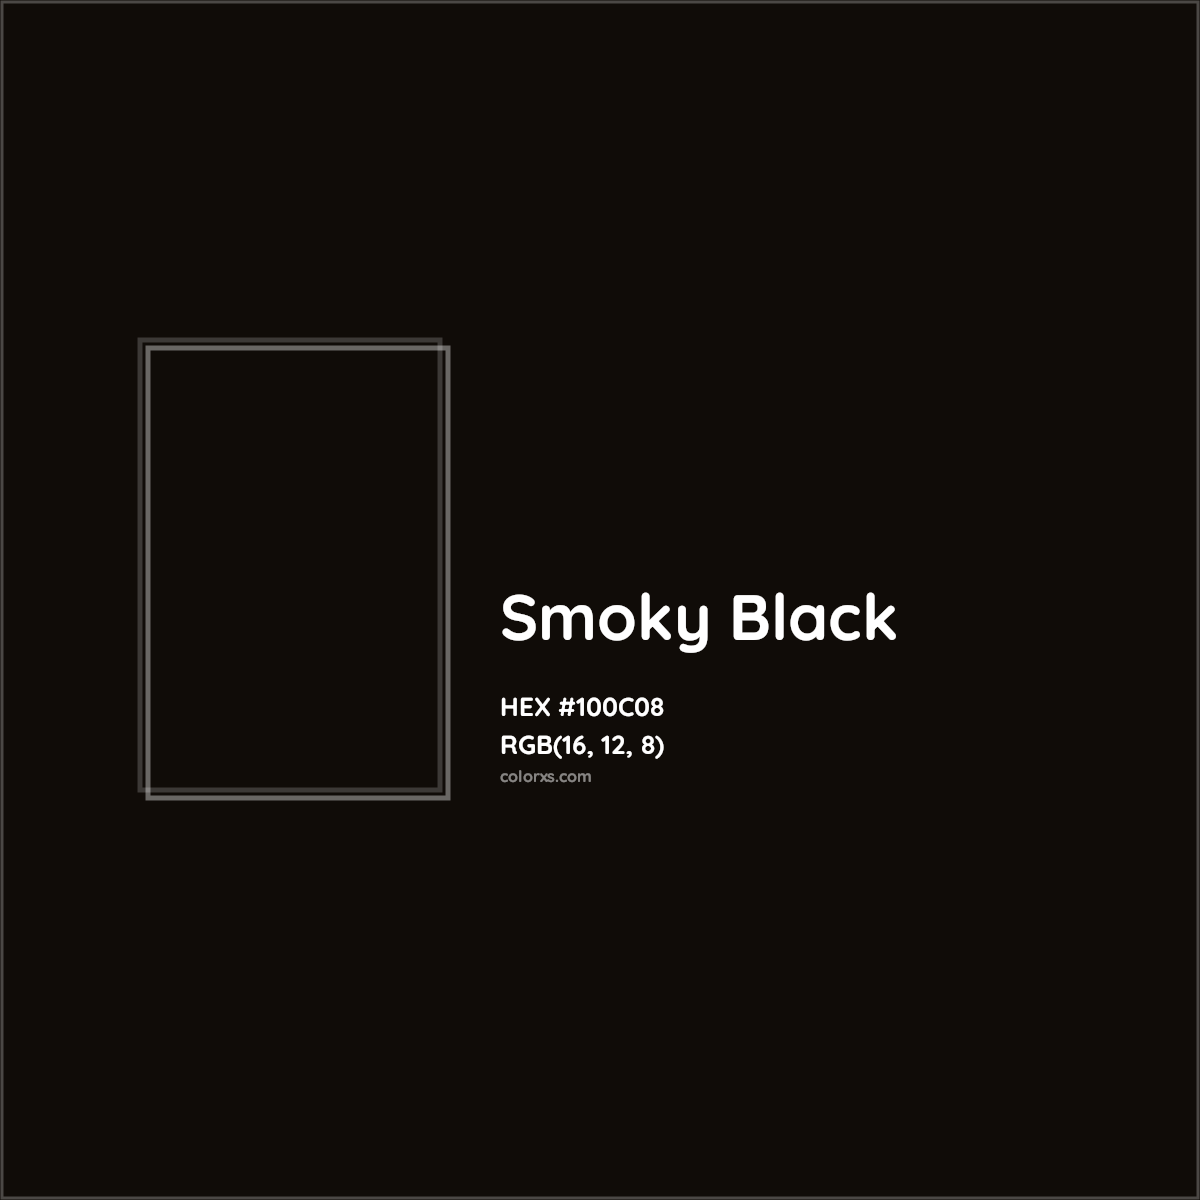 HEX #100C08 Smoky Black Color - Color Code